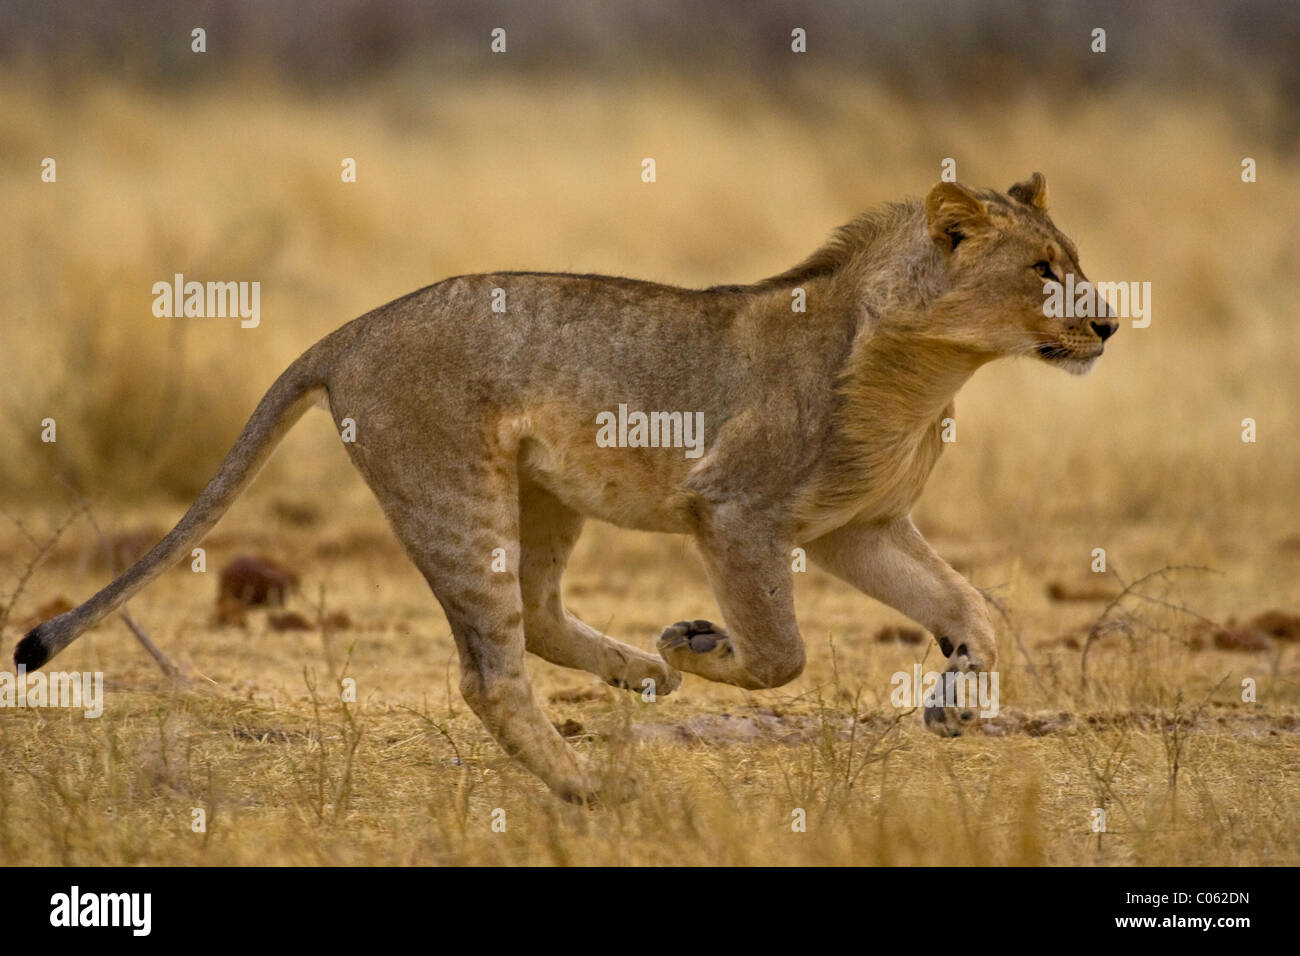 Young lion running, Etosha National Park, Namibia Stock Photo